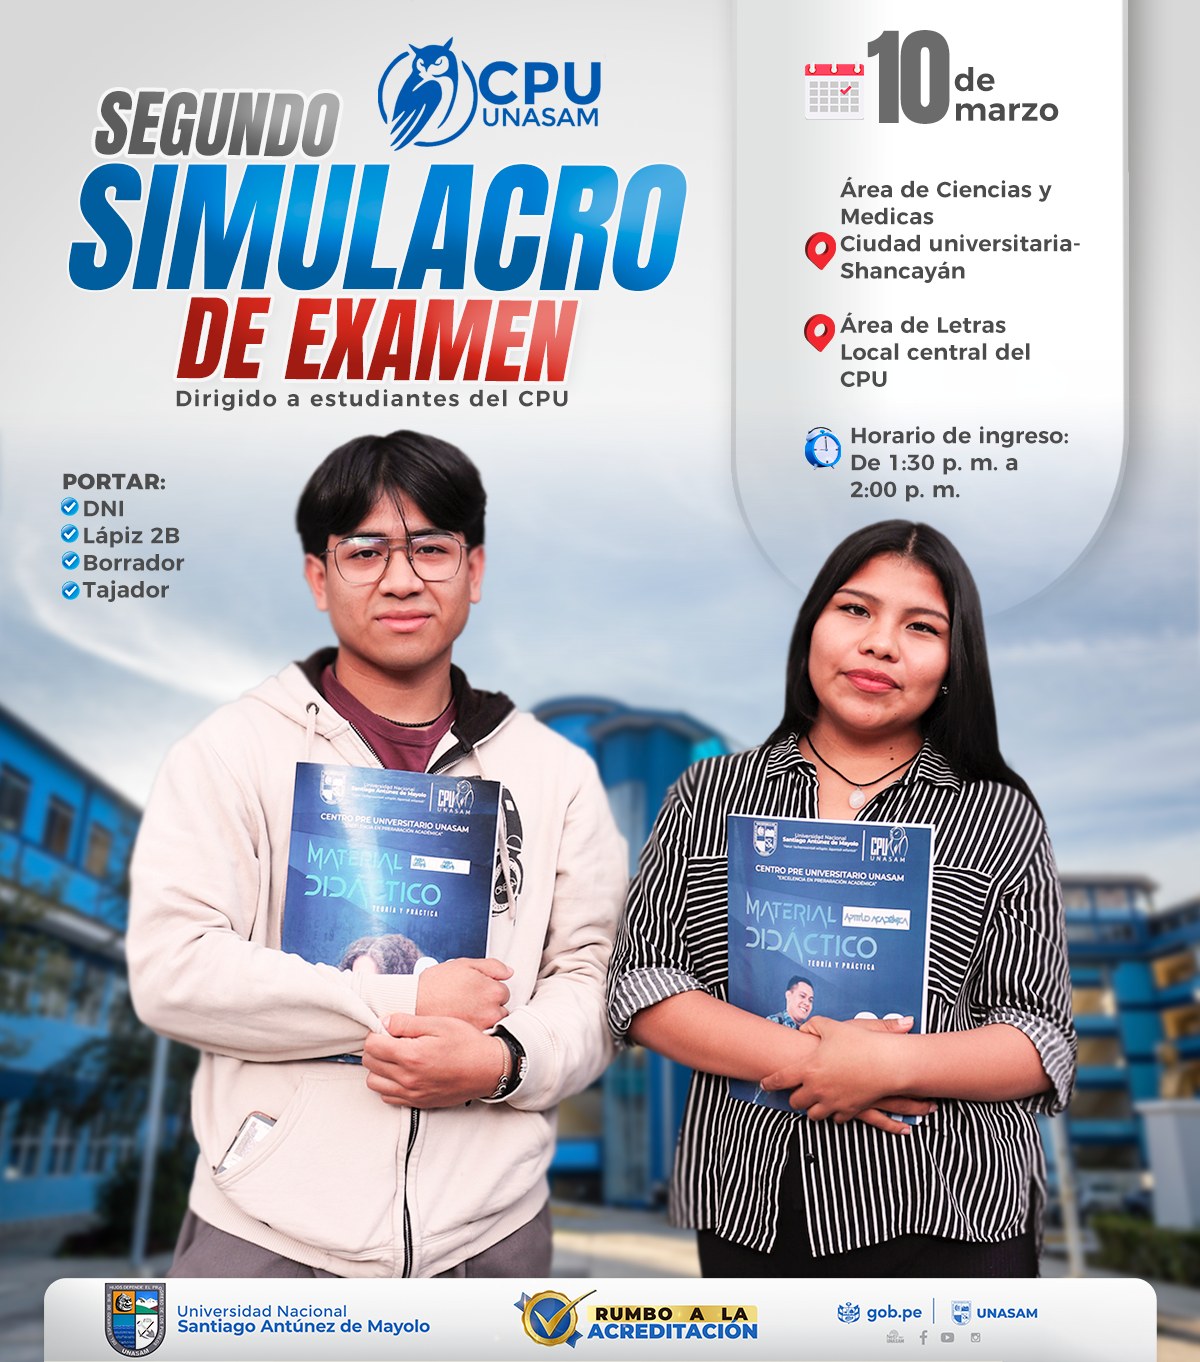  																SEGUNDO SIMULACRO DE EXAMEN CPU
																